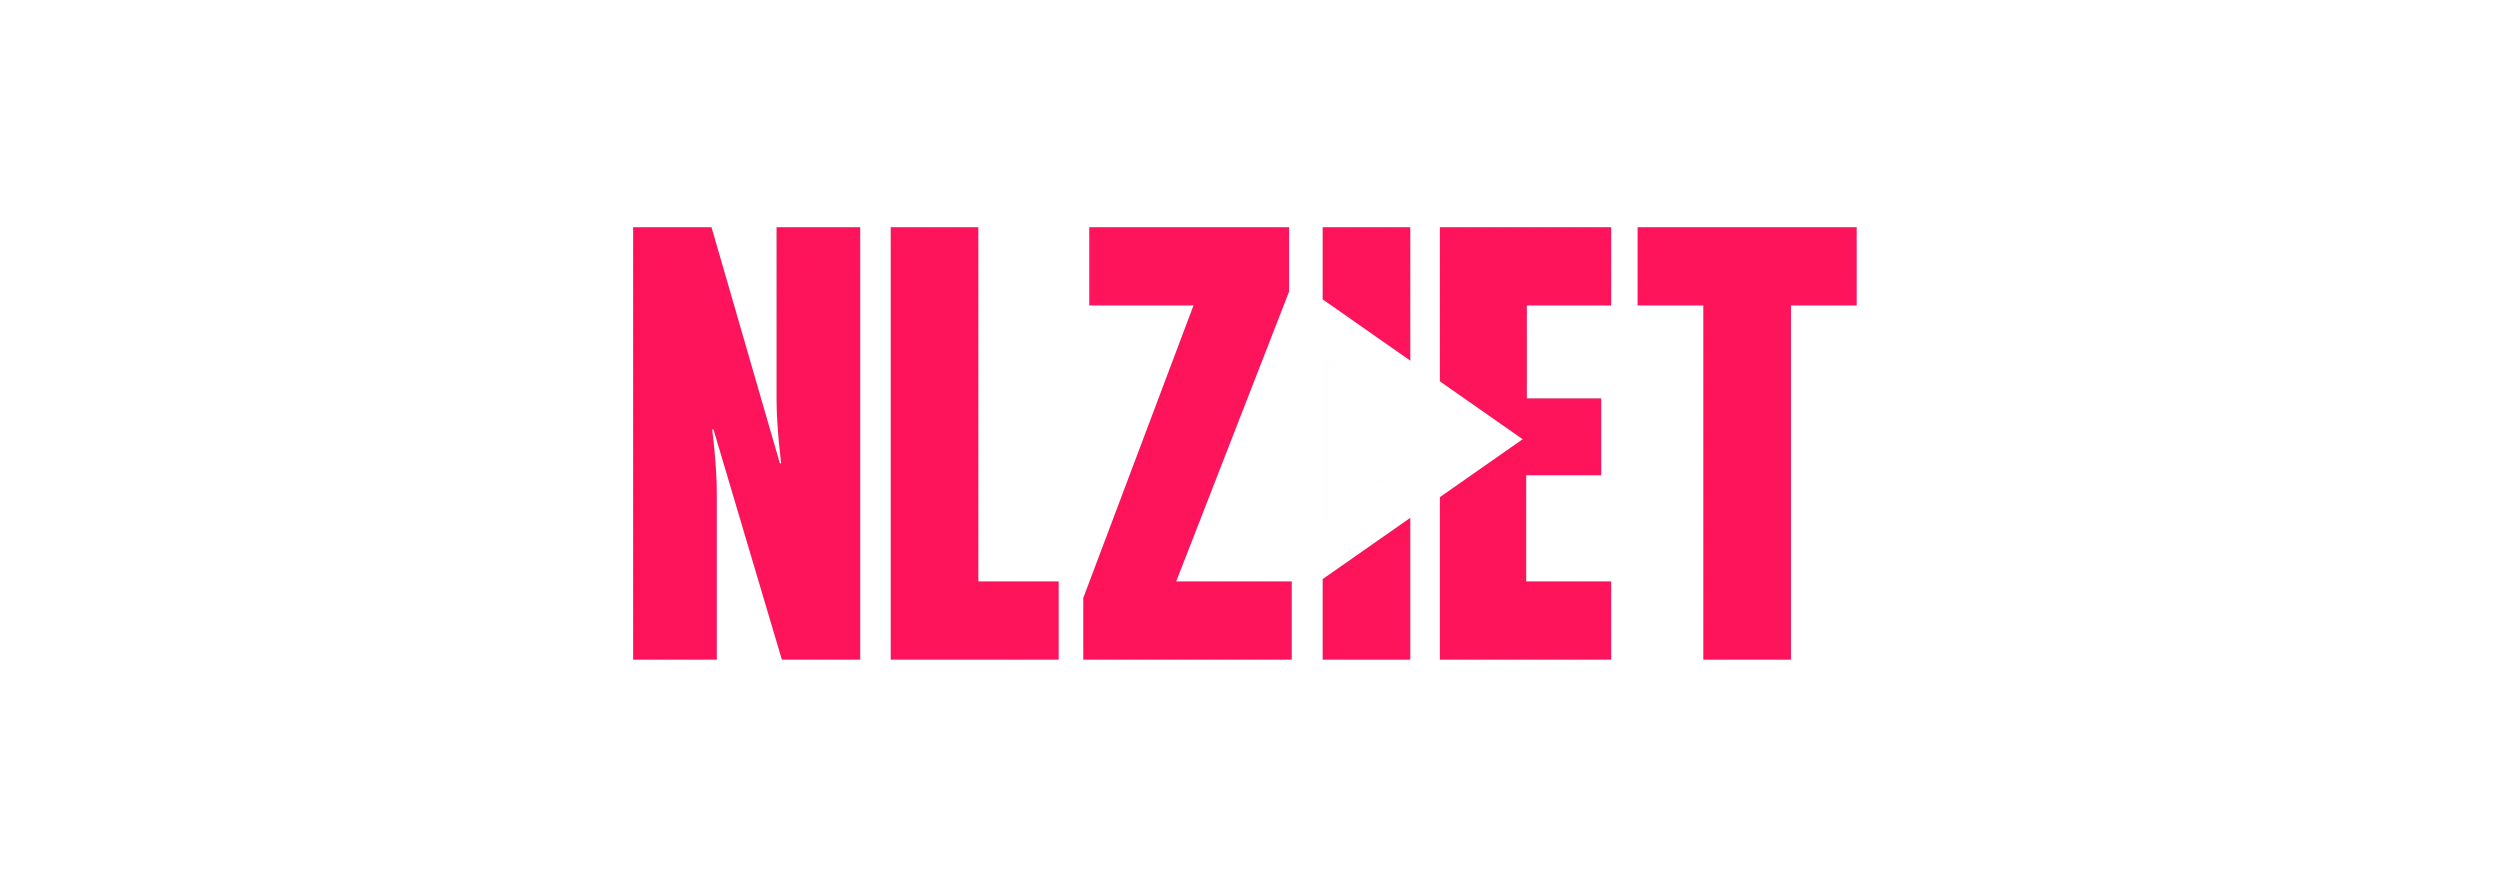 nlziet-2